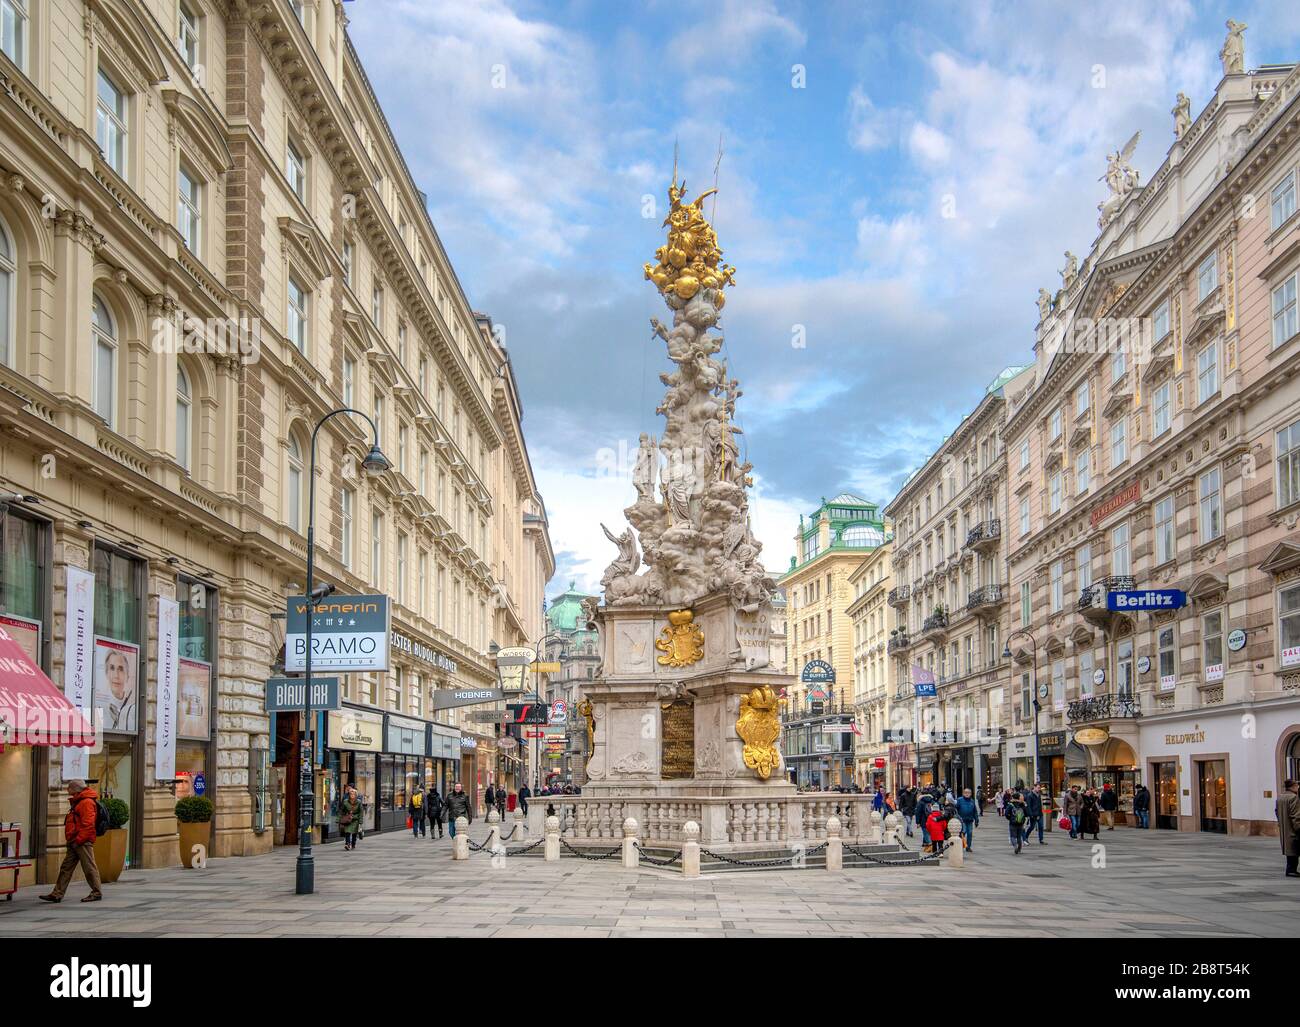 Vienne, Autriche.La colonne de la peste ou la colonne de la Sainte Trinité, un monument religieux sur la rue Graben.Grabenstrasse dans le centre-ville de Wien. Banque D'Images